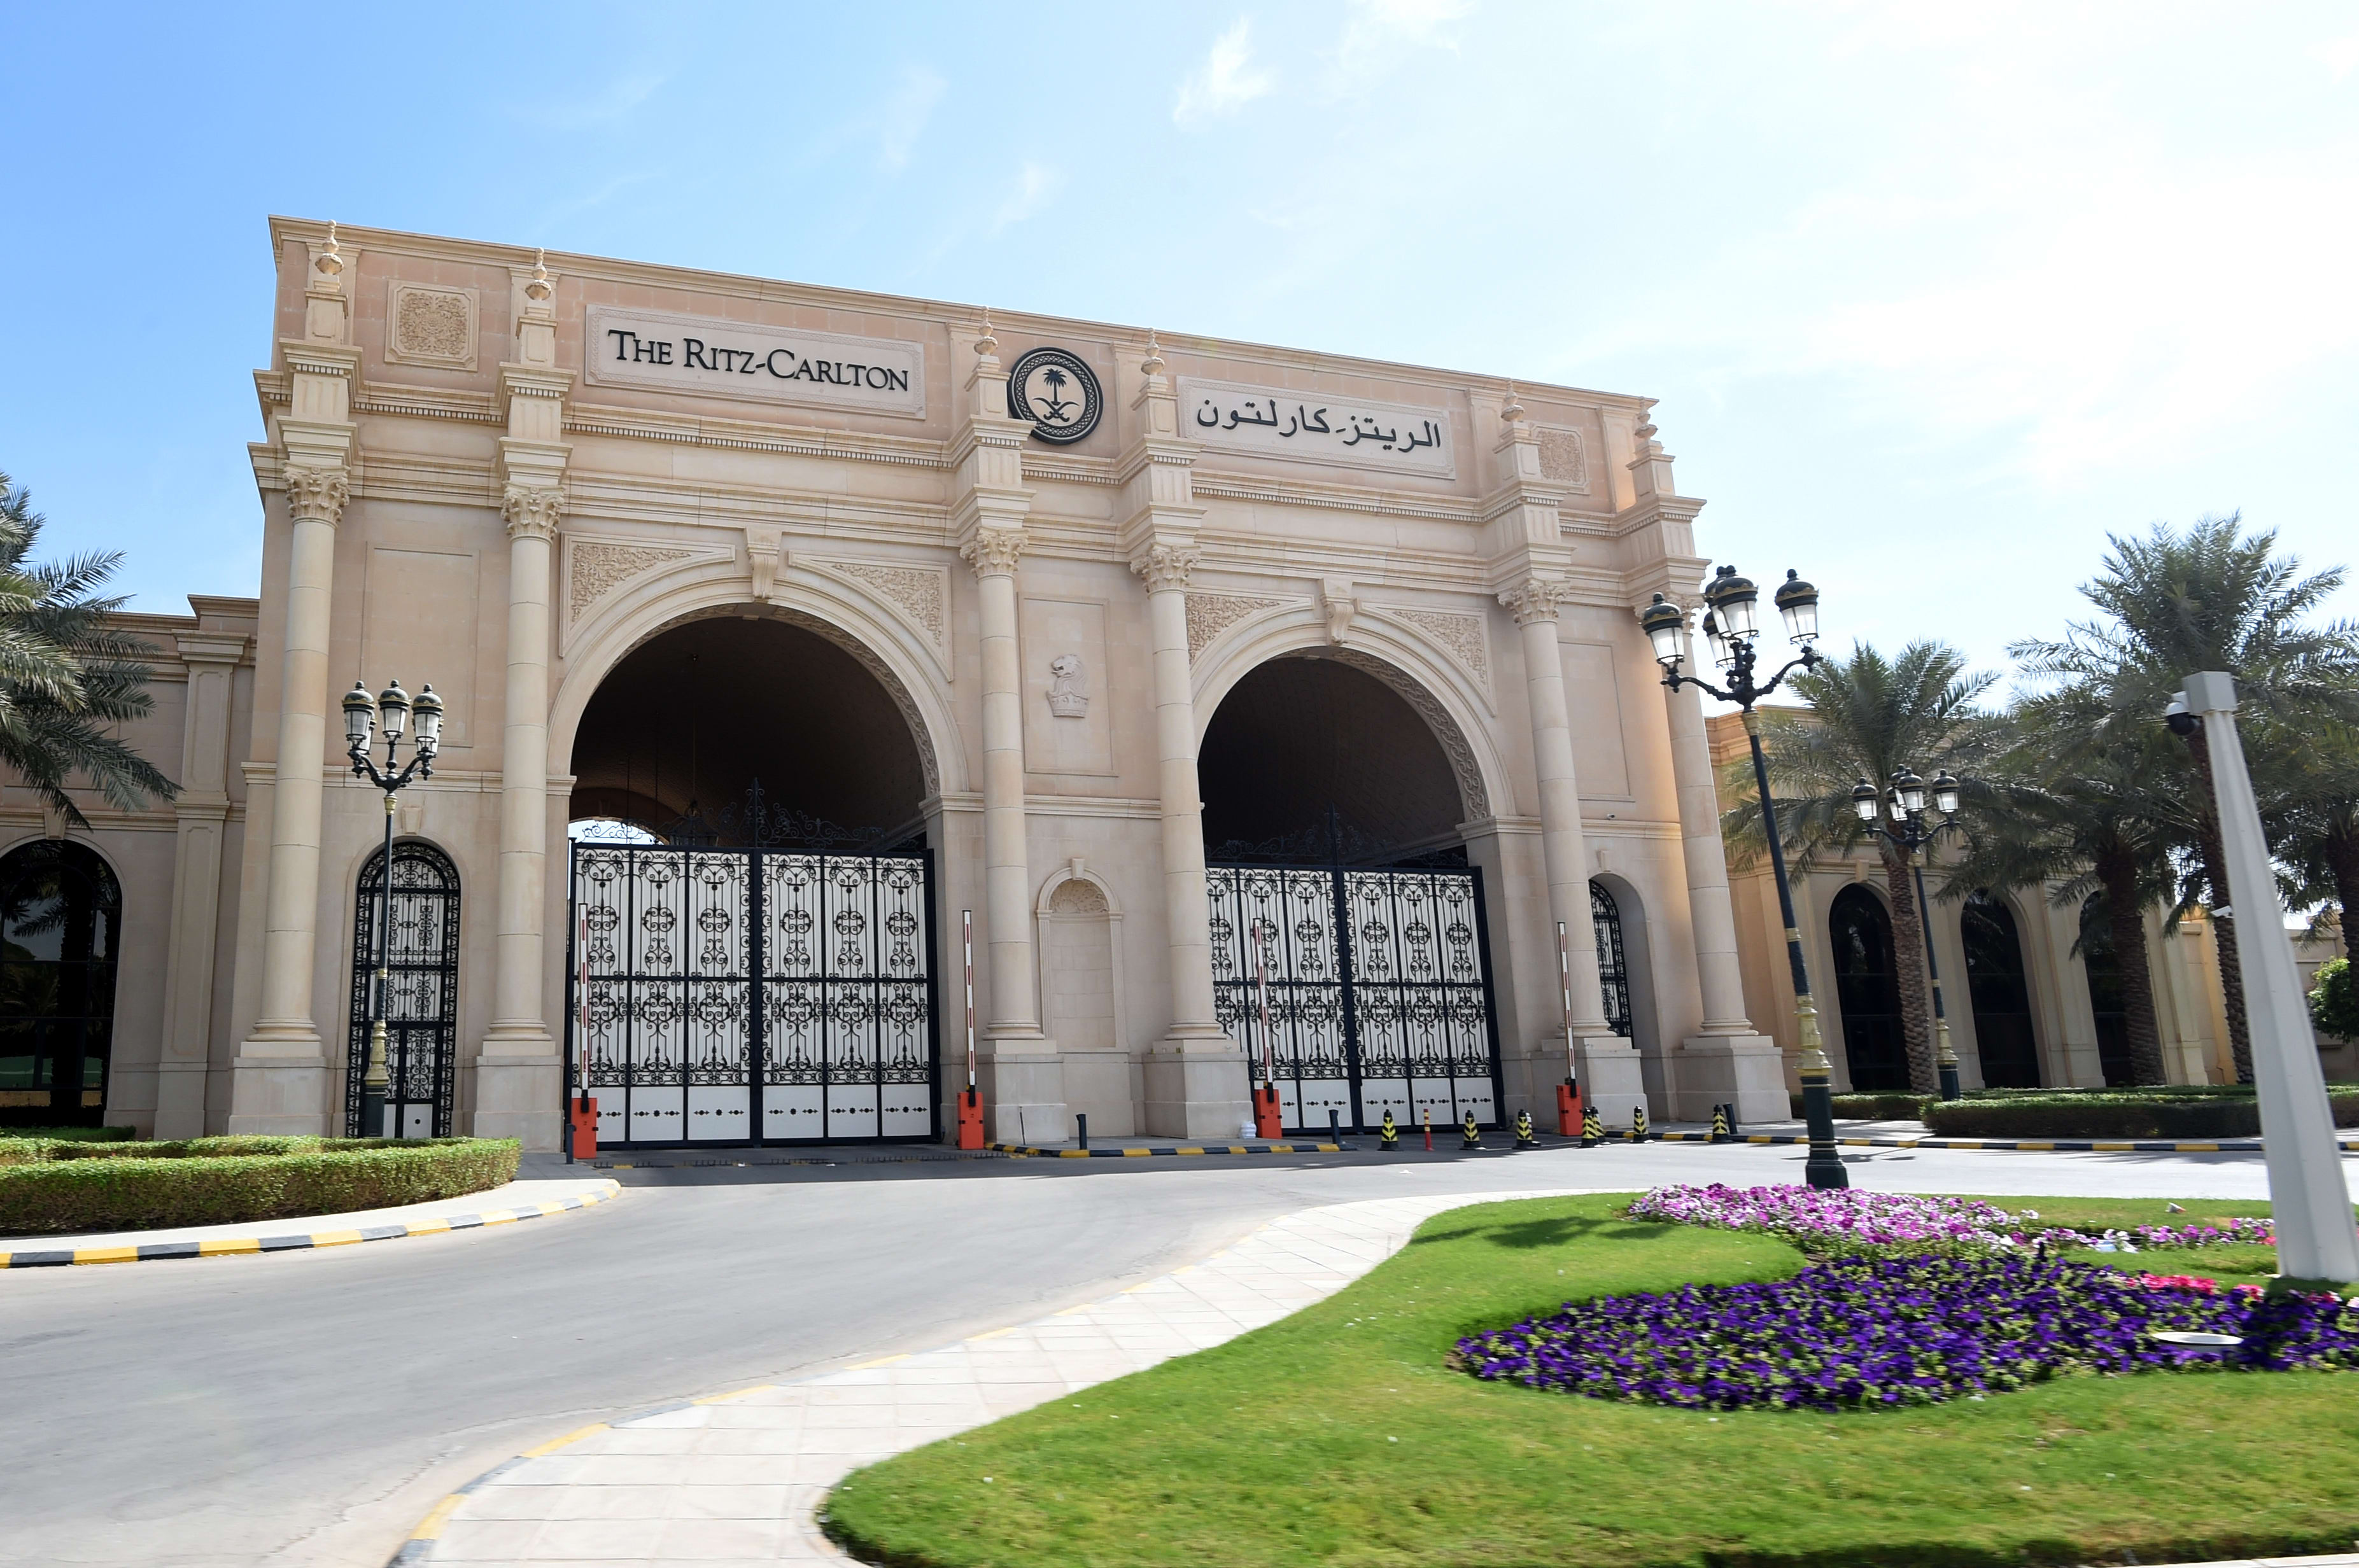 The main gate of the Ritz Carlton hotel in Riyadh.